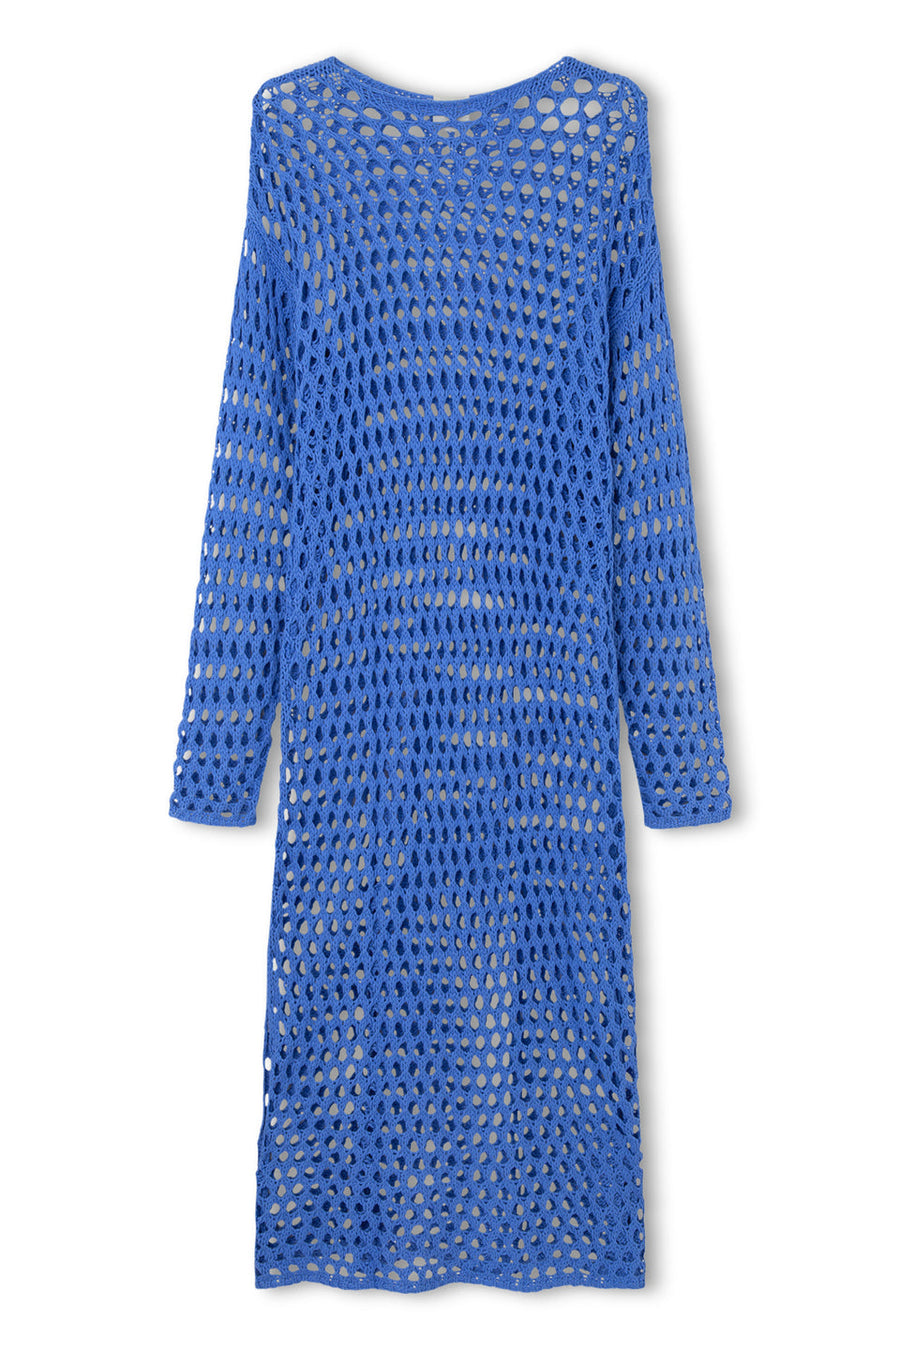 Zulu & Zephyr - Sky Crochet Knit Dress